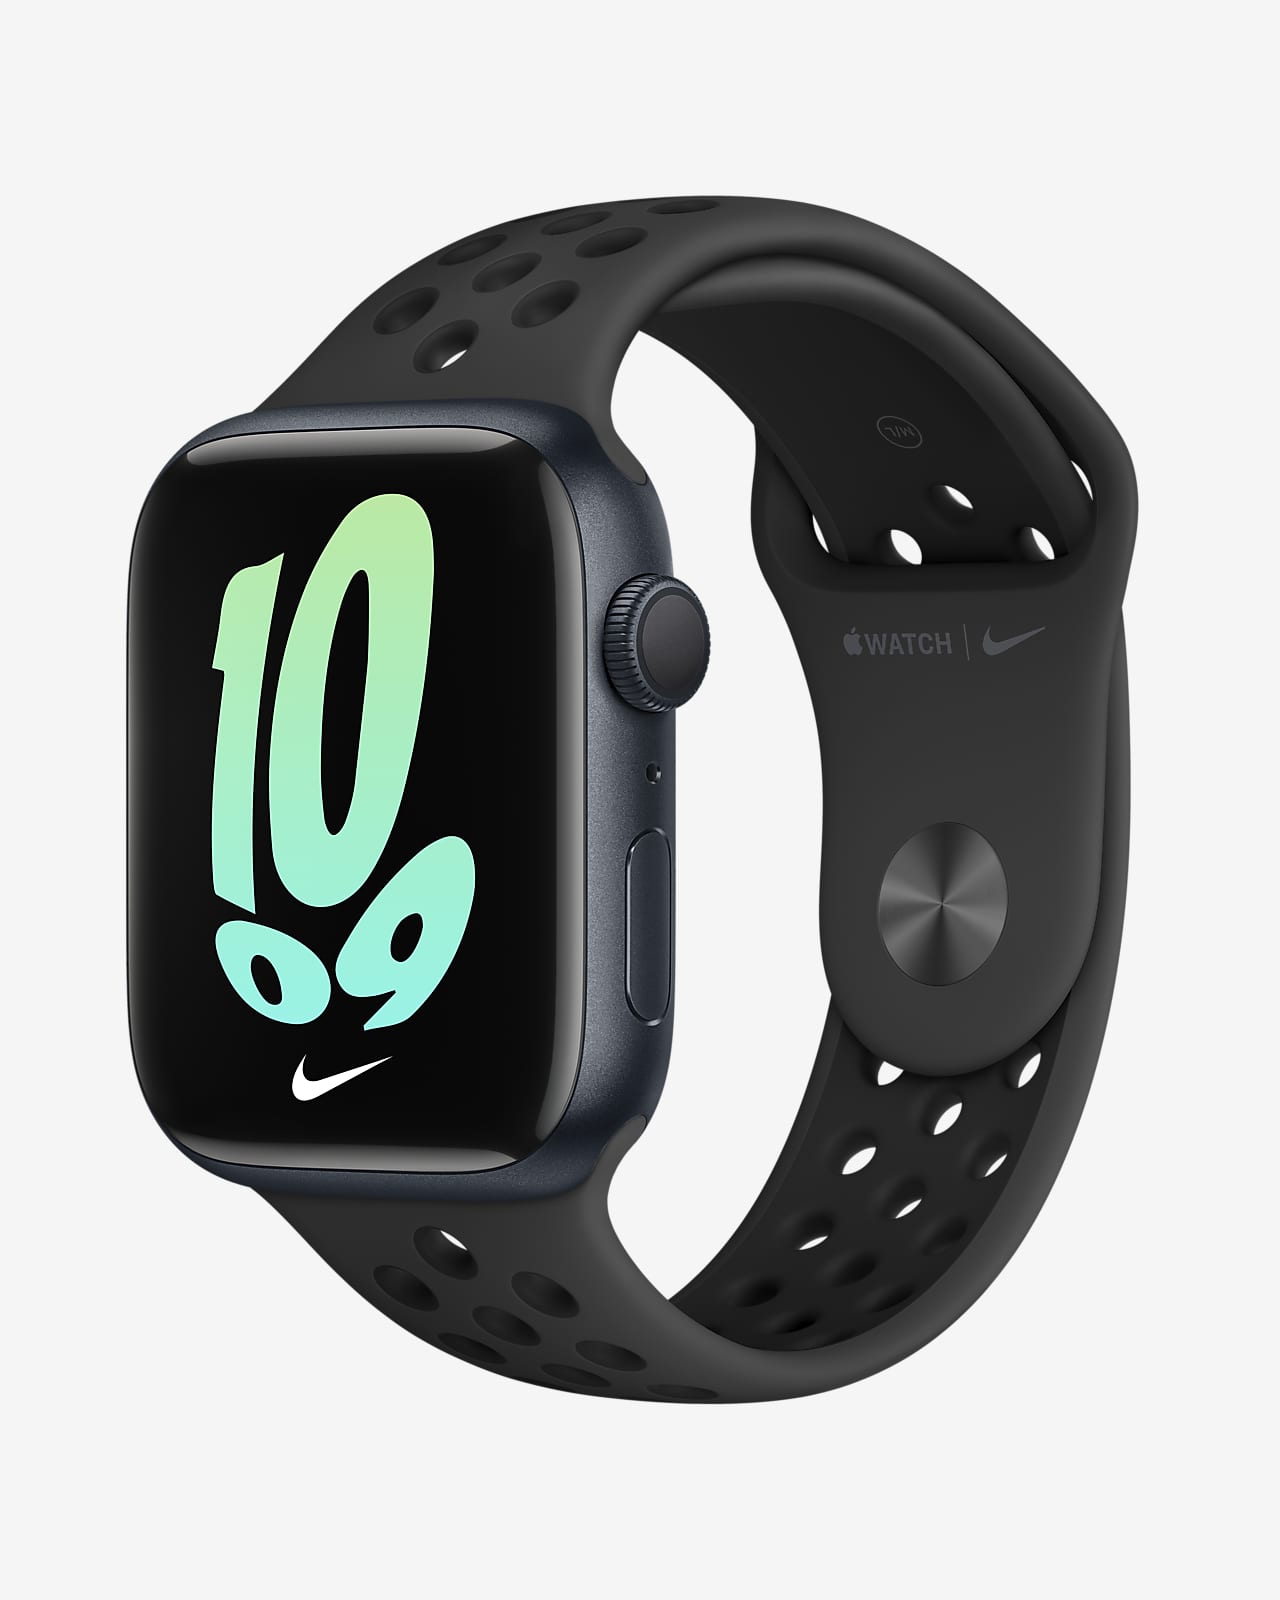 Apple Watch sports